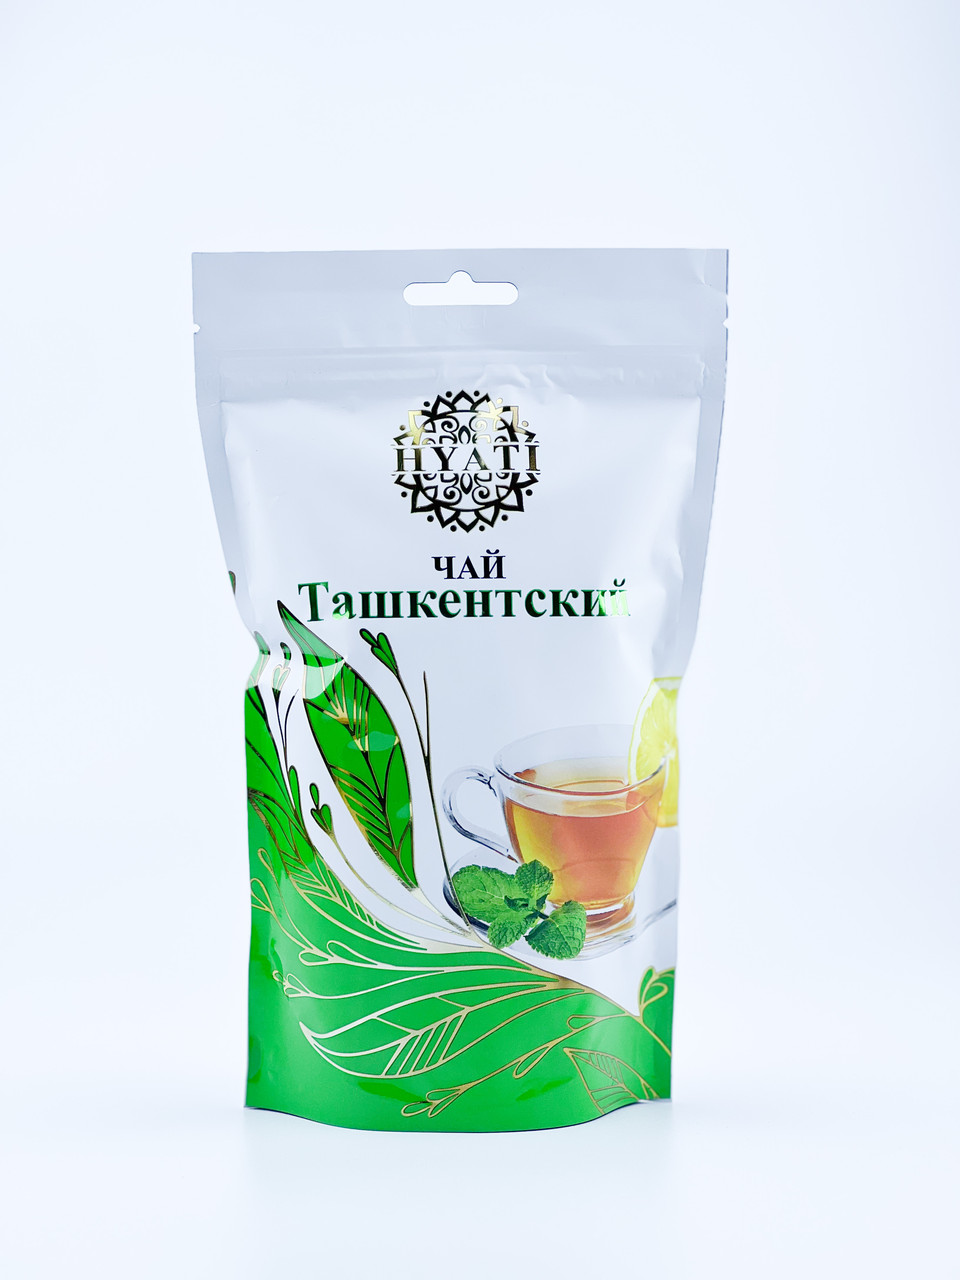 Чай "Ташкентский" от бренда Hyati.